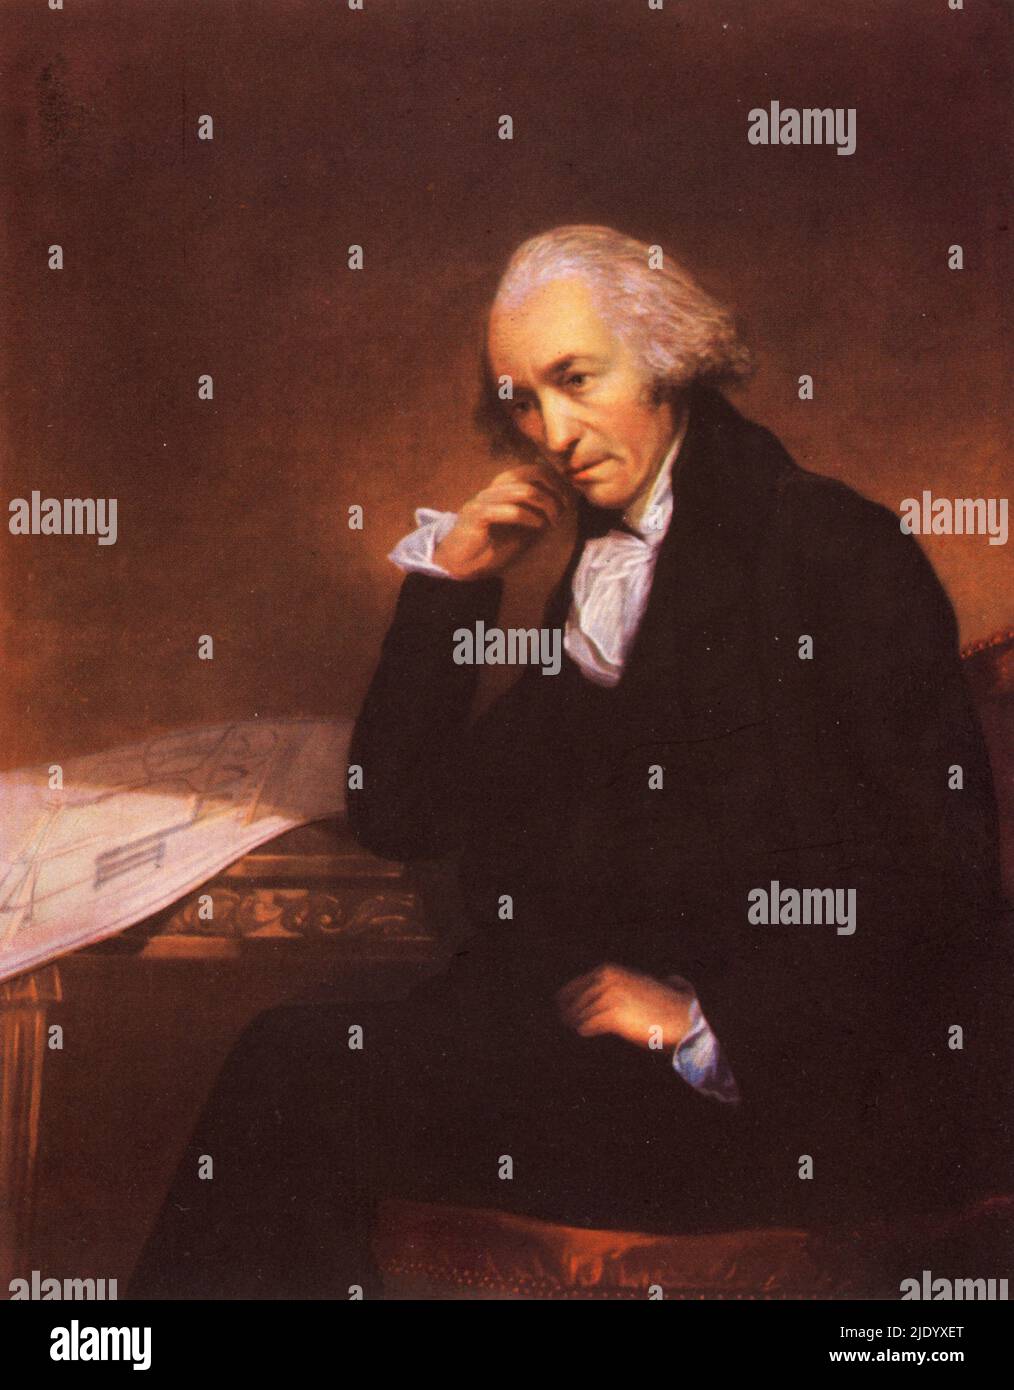 James Watt (1736-1819), 1792. Di Carl Frederik von Breda (1759-1818). Inventore scozzese, ingegnere meccanico e chimico. Il motore a vapore di watt del 1776 era fondamentale per la Rivoluzione industriale. Foto Stock